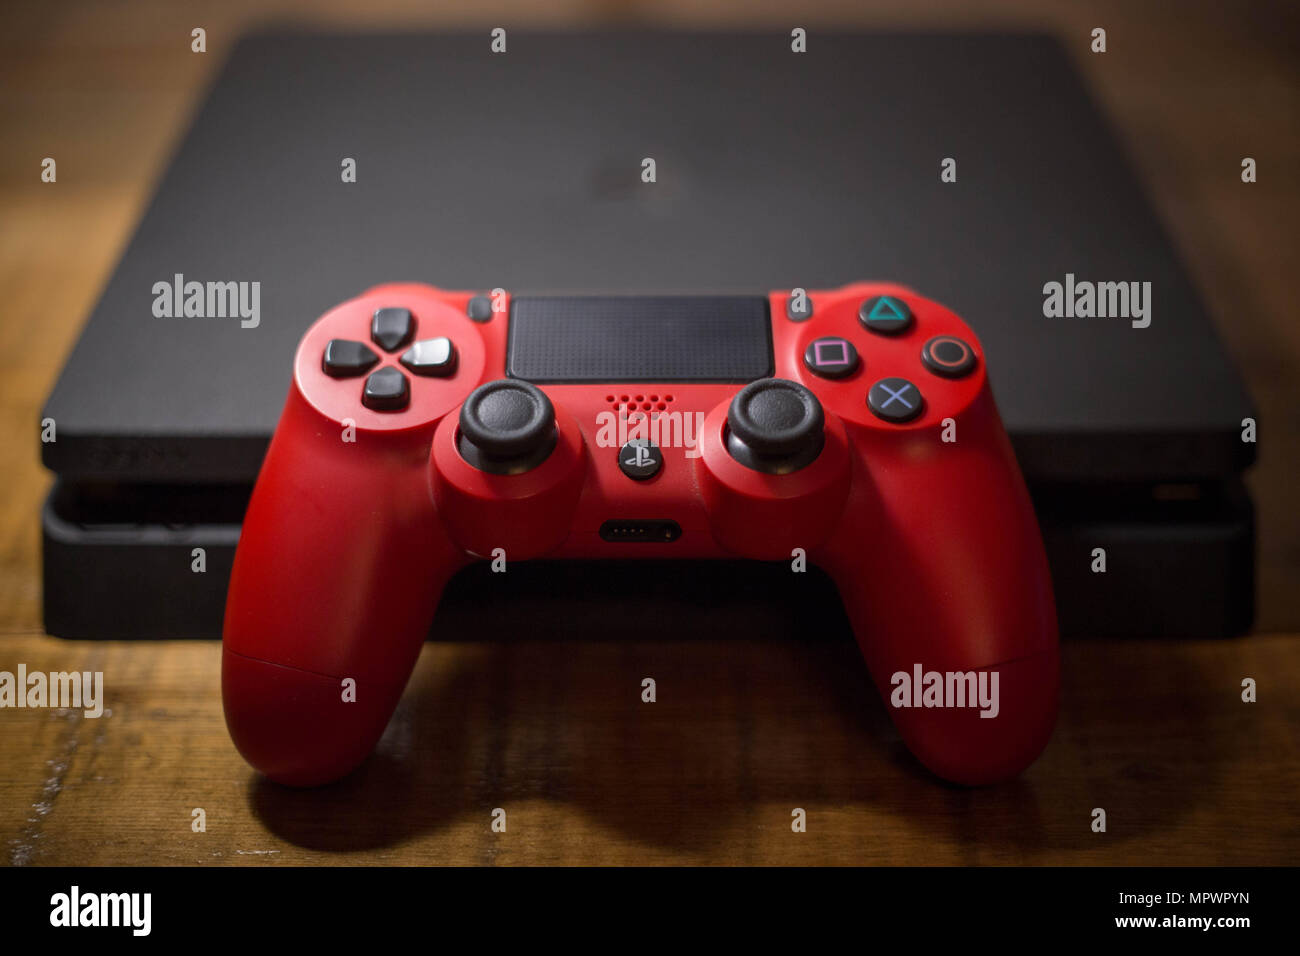 PlayStation 4: Sony divulga fotos inéditas da interface do console